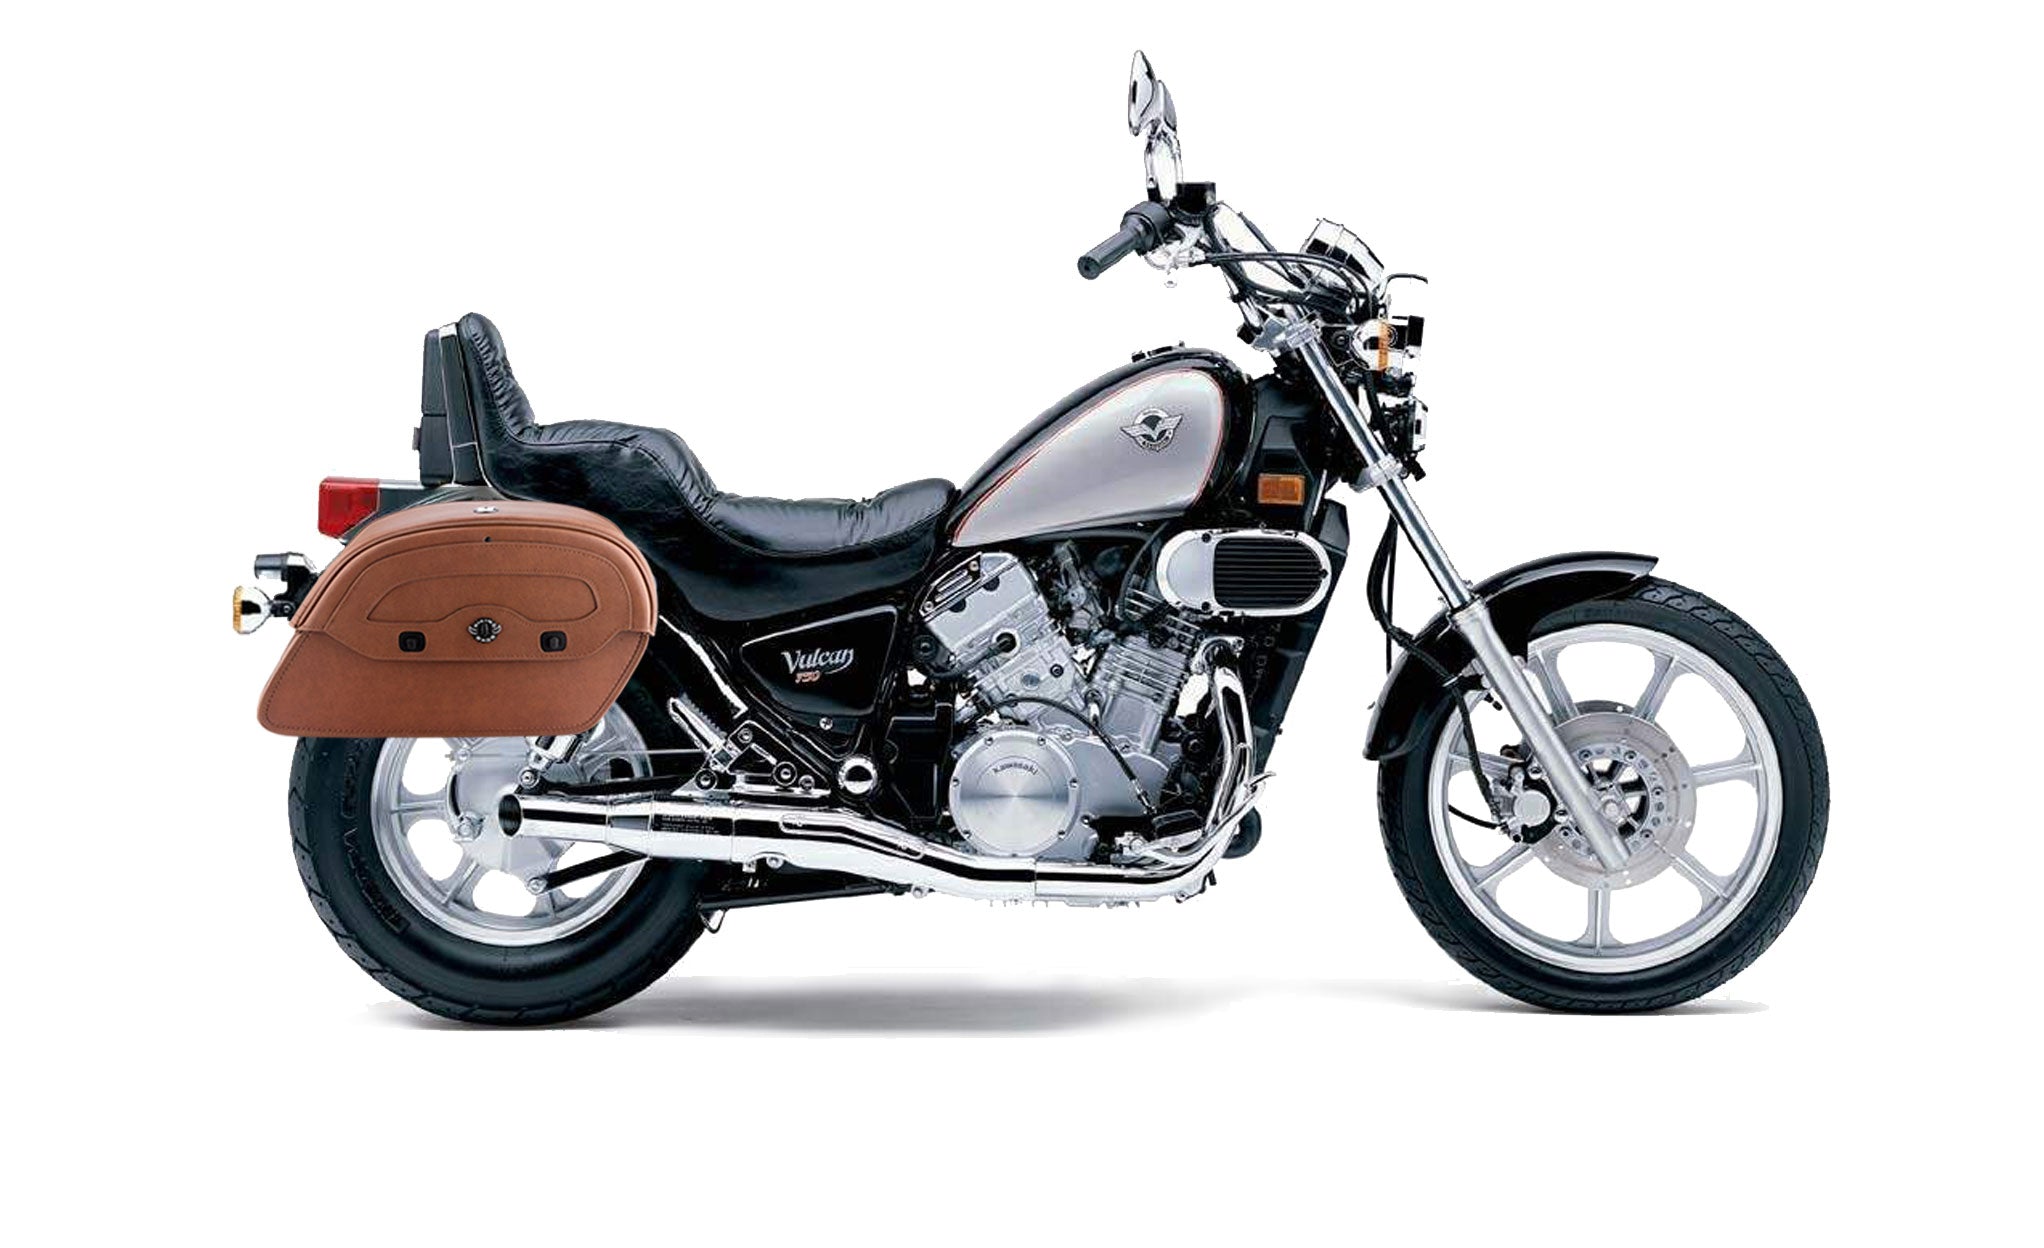 Viking Warrior Brown Large Kawasaki Vulcan 750 Vn750 Leather Motorcycle Saddlebags on Bike Photo @expand